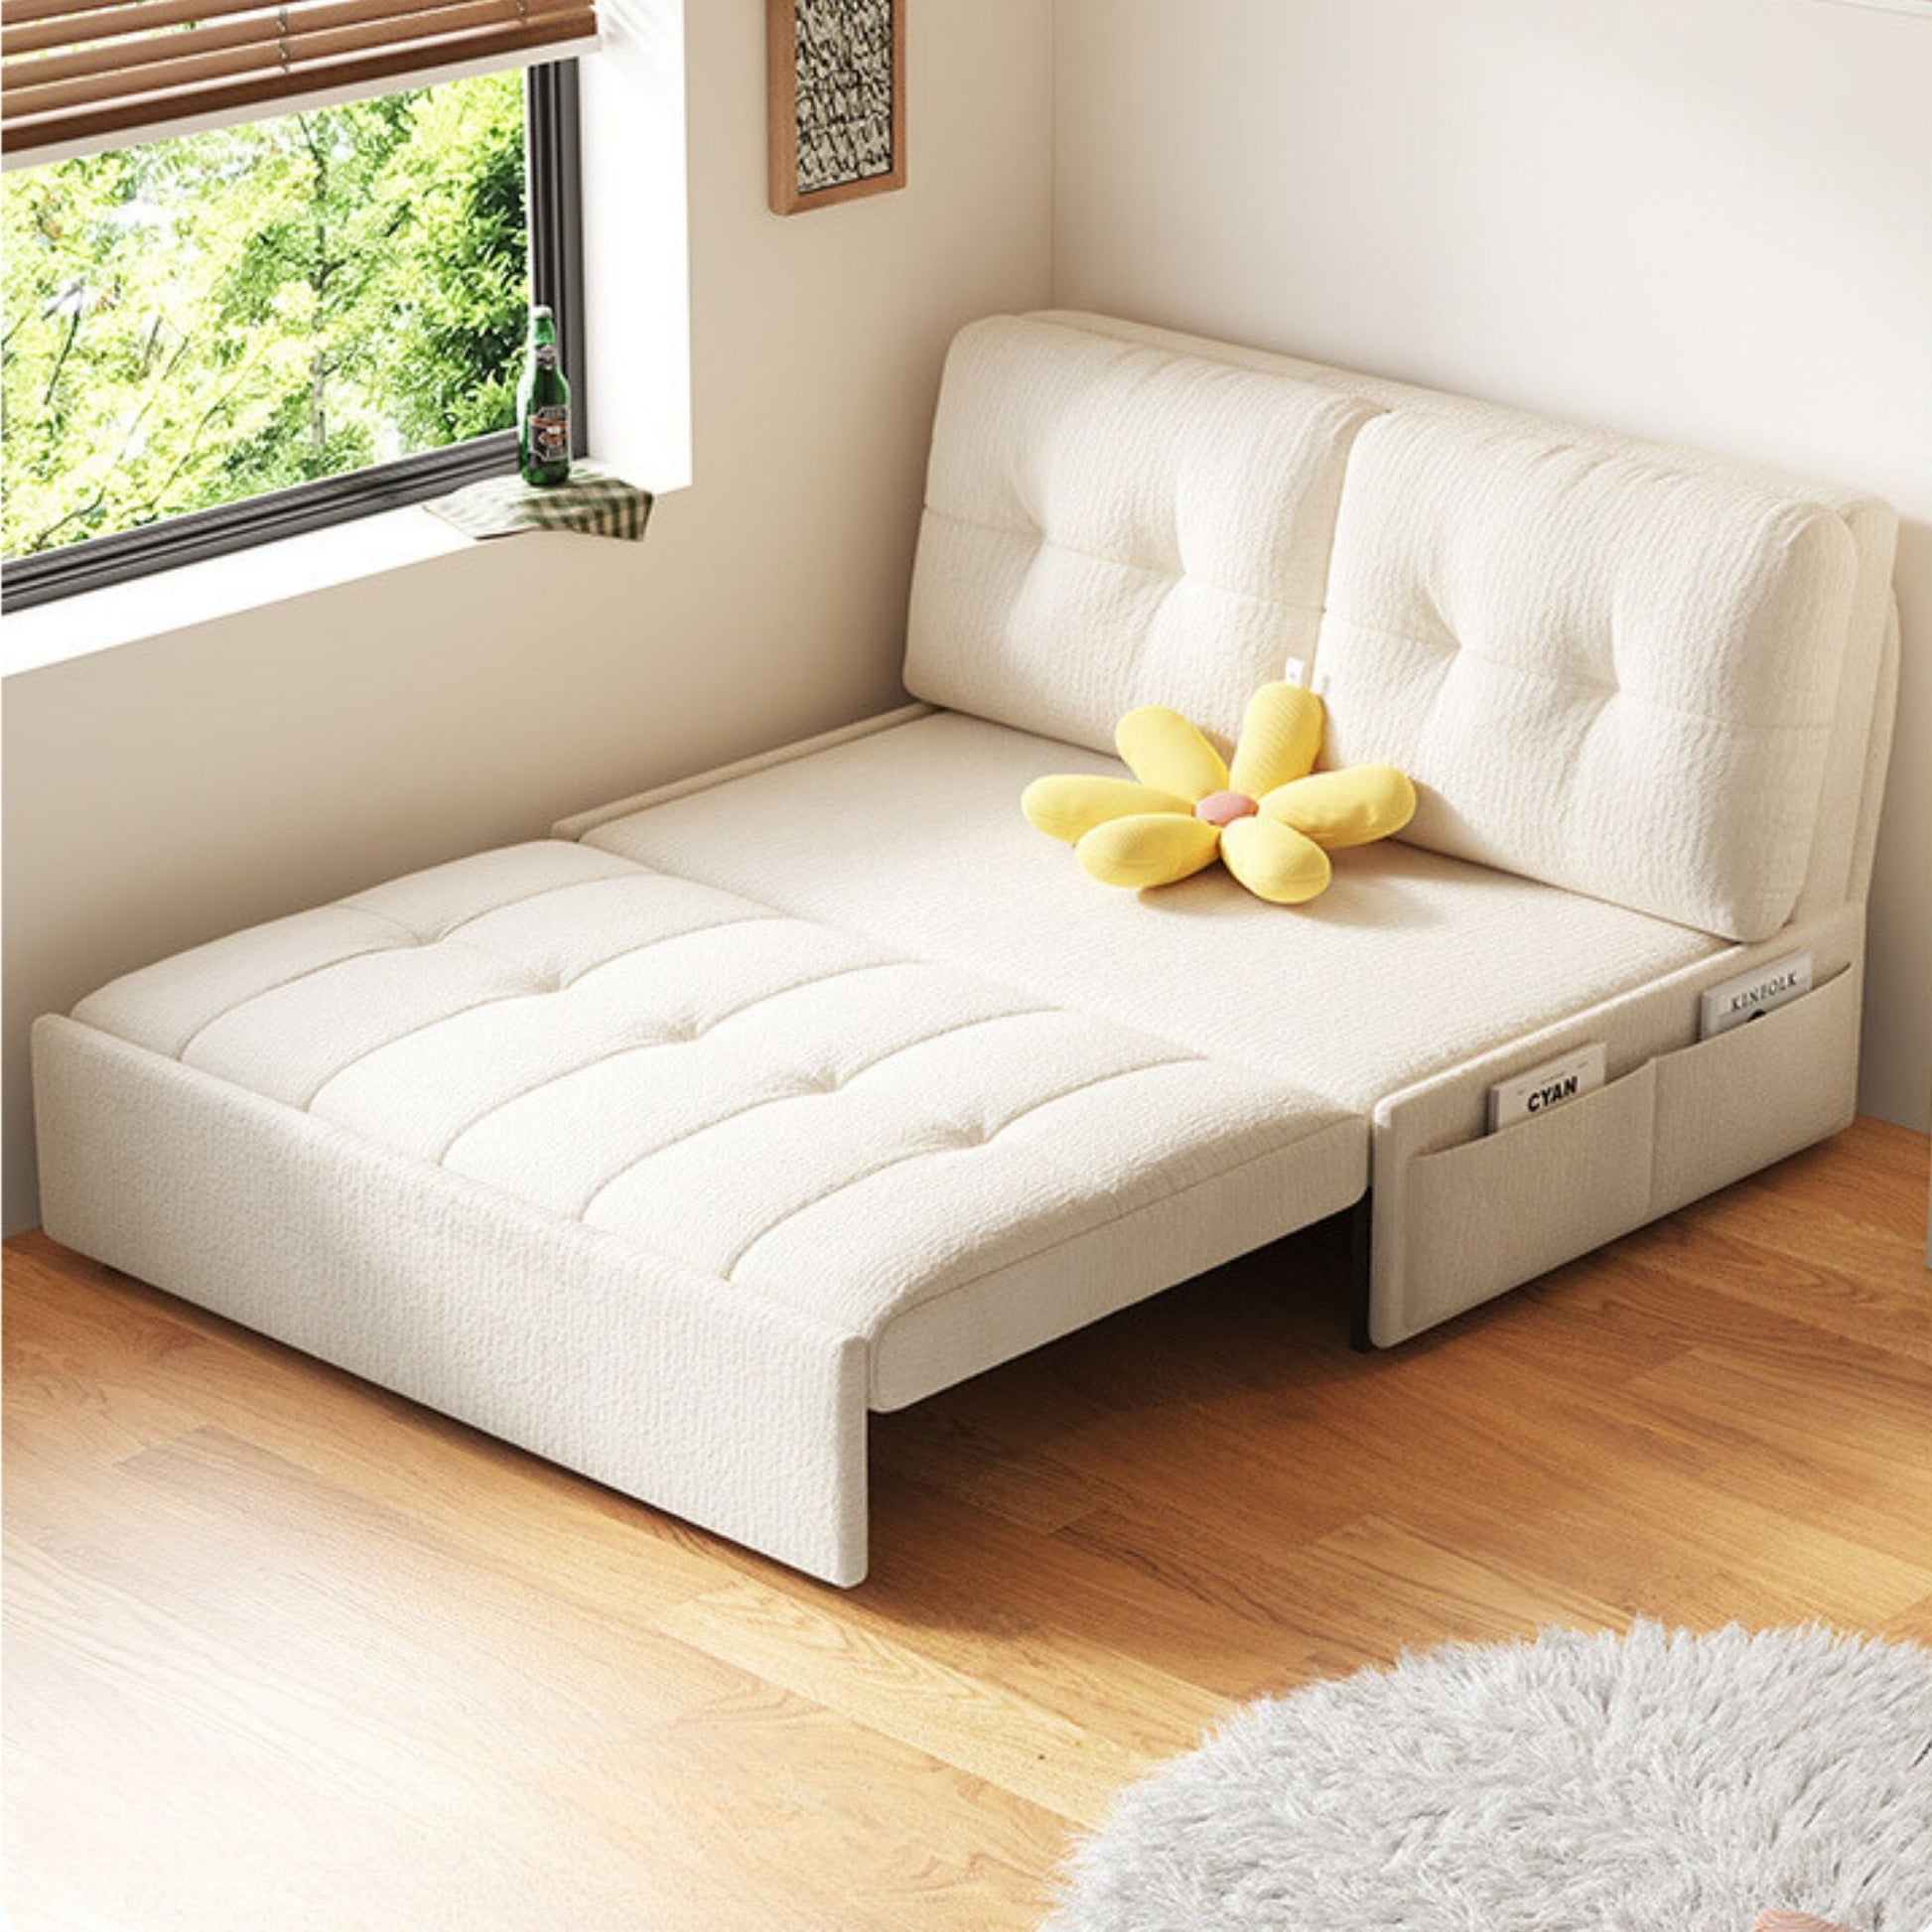 Ciabatta fabric sofa bed large white